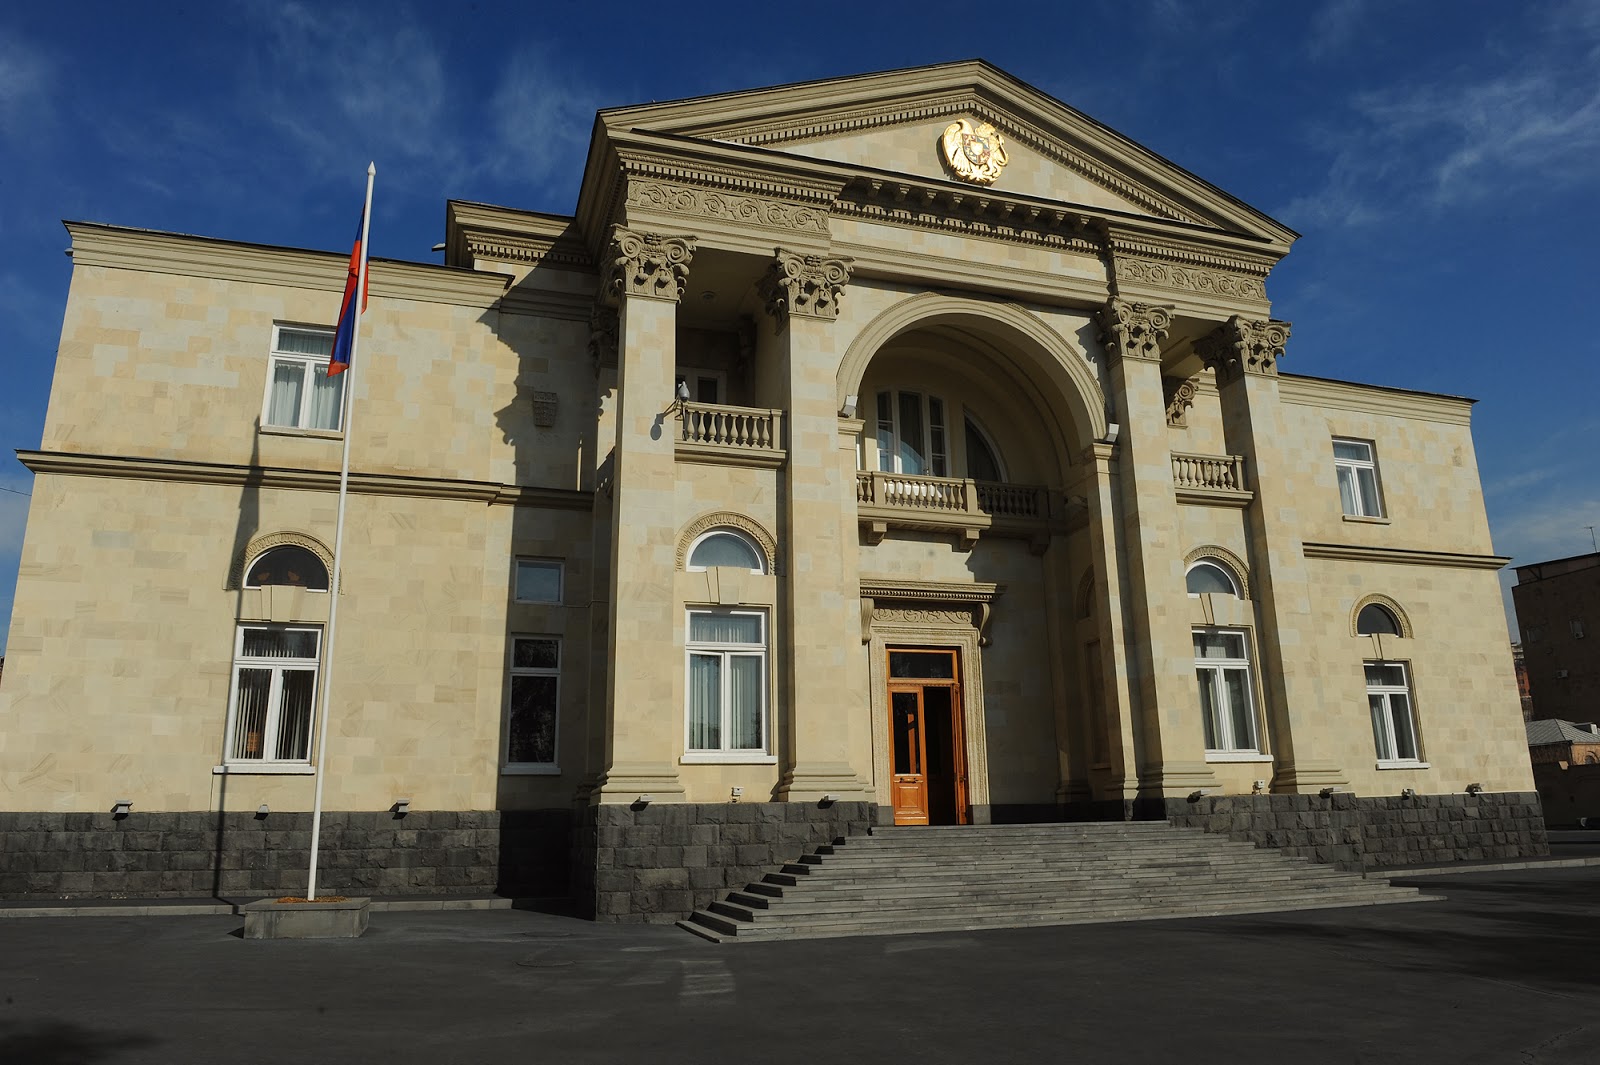 Резиденция президента Армении